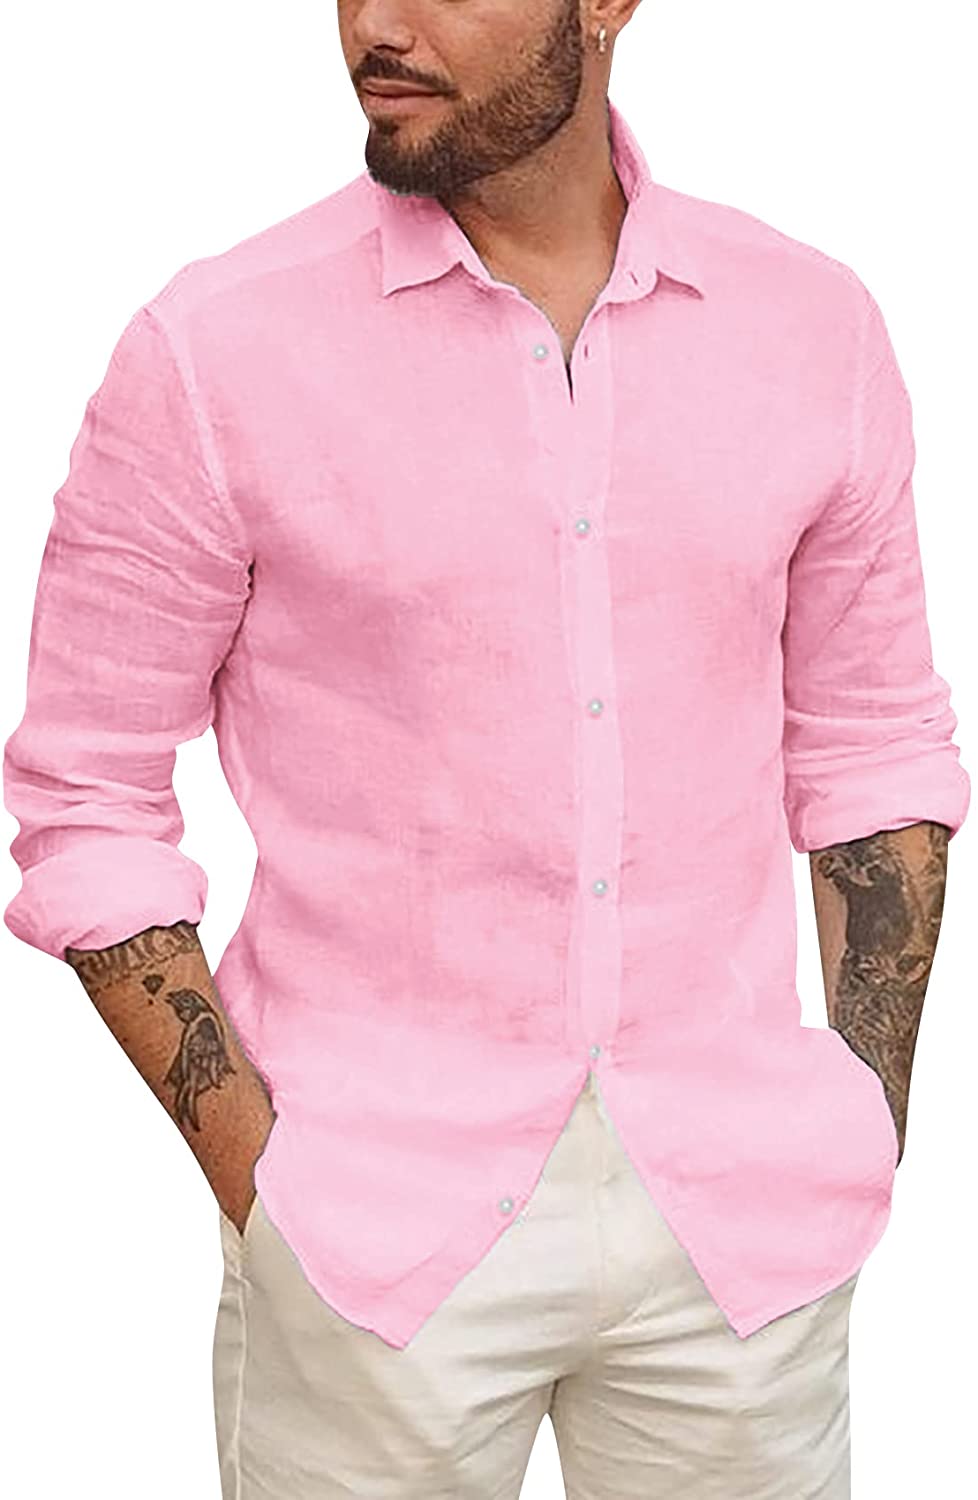 APRAW Mens Linen Button Down Shirts Long Sleeves Summer Beach Casual  Regular Fit Shirt Tops